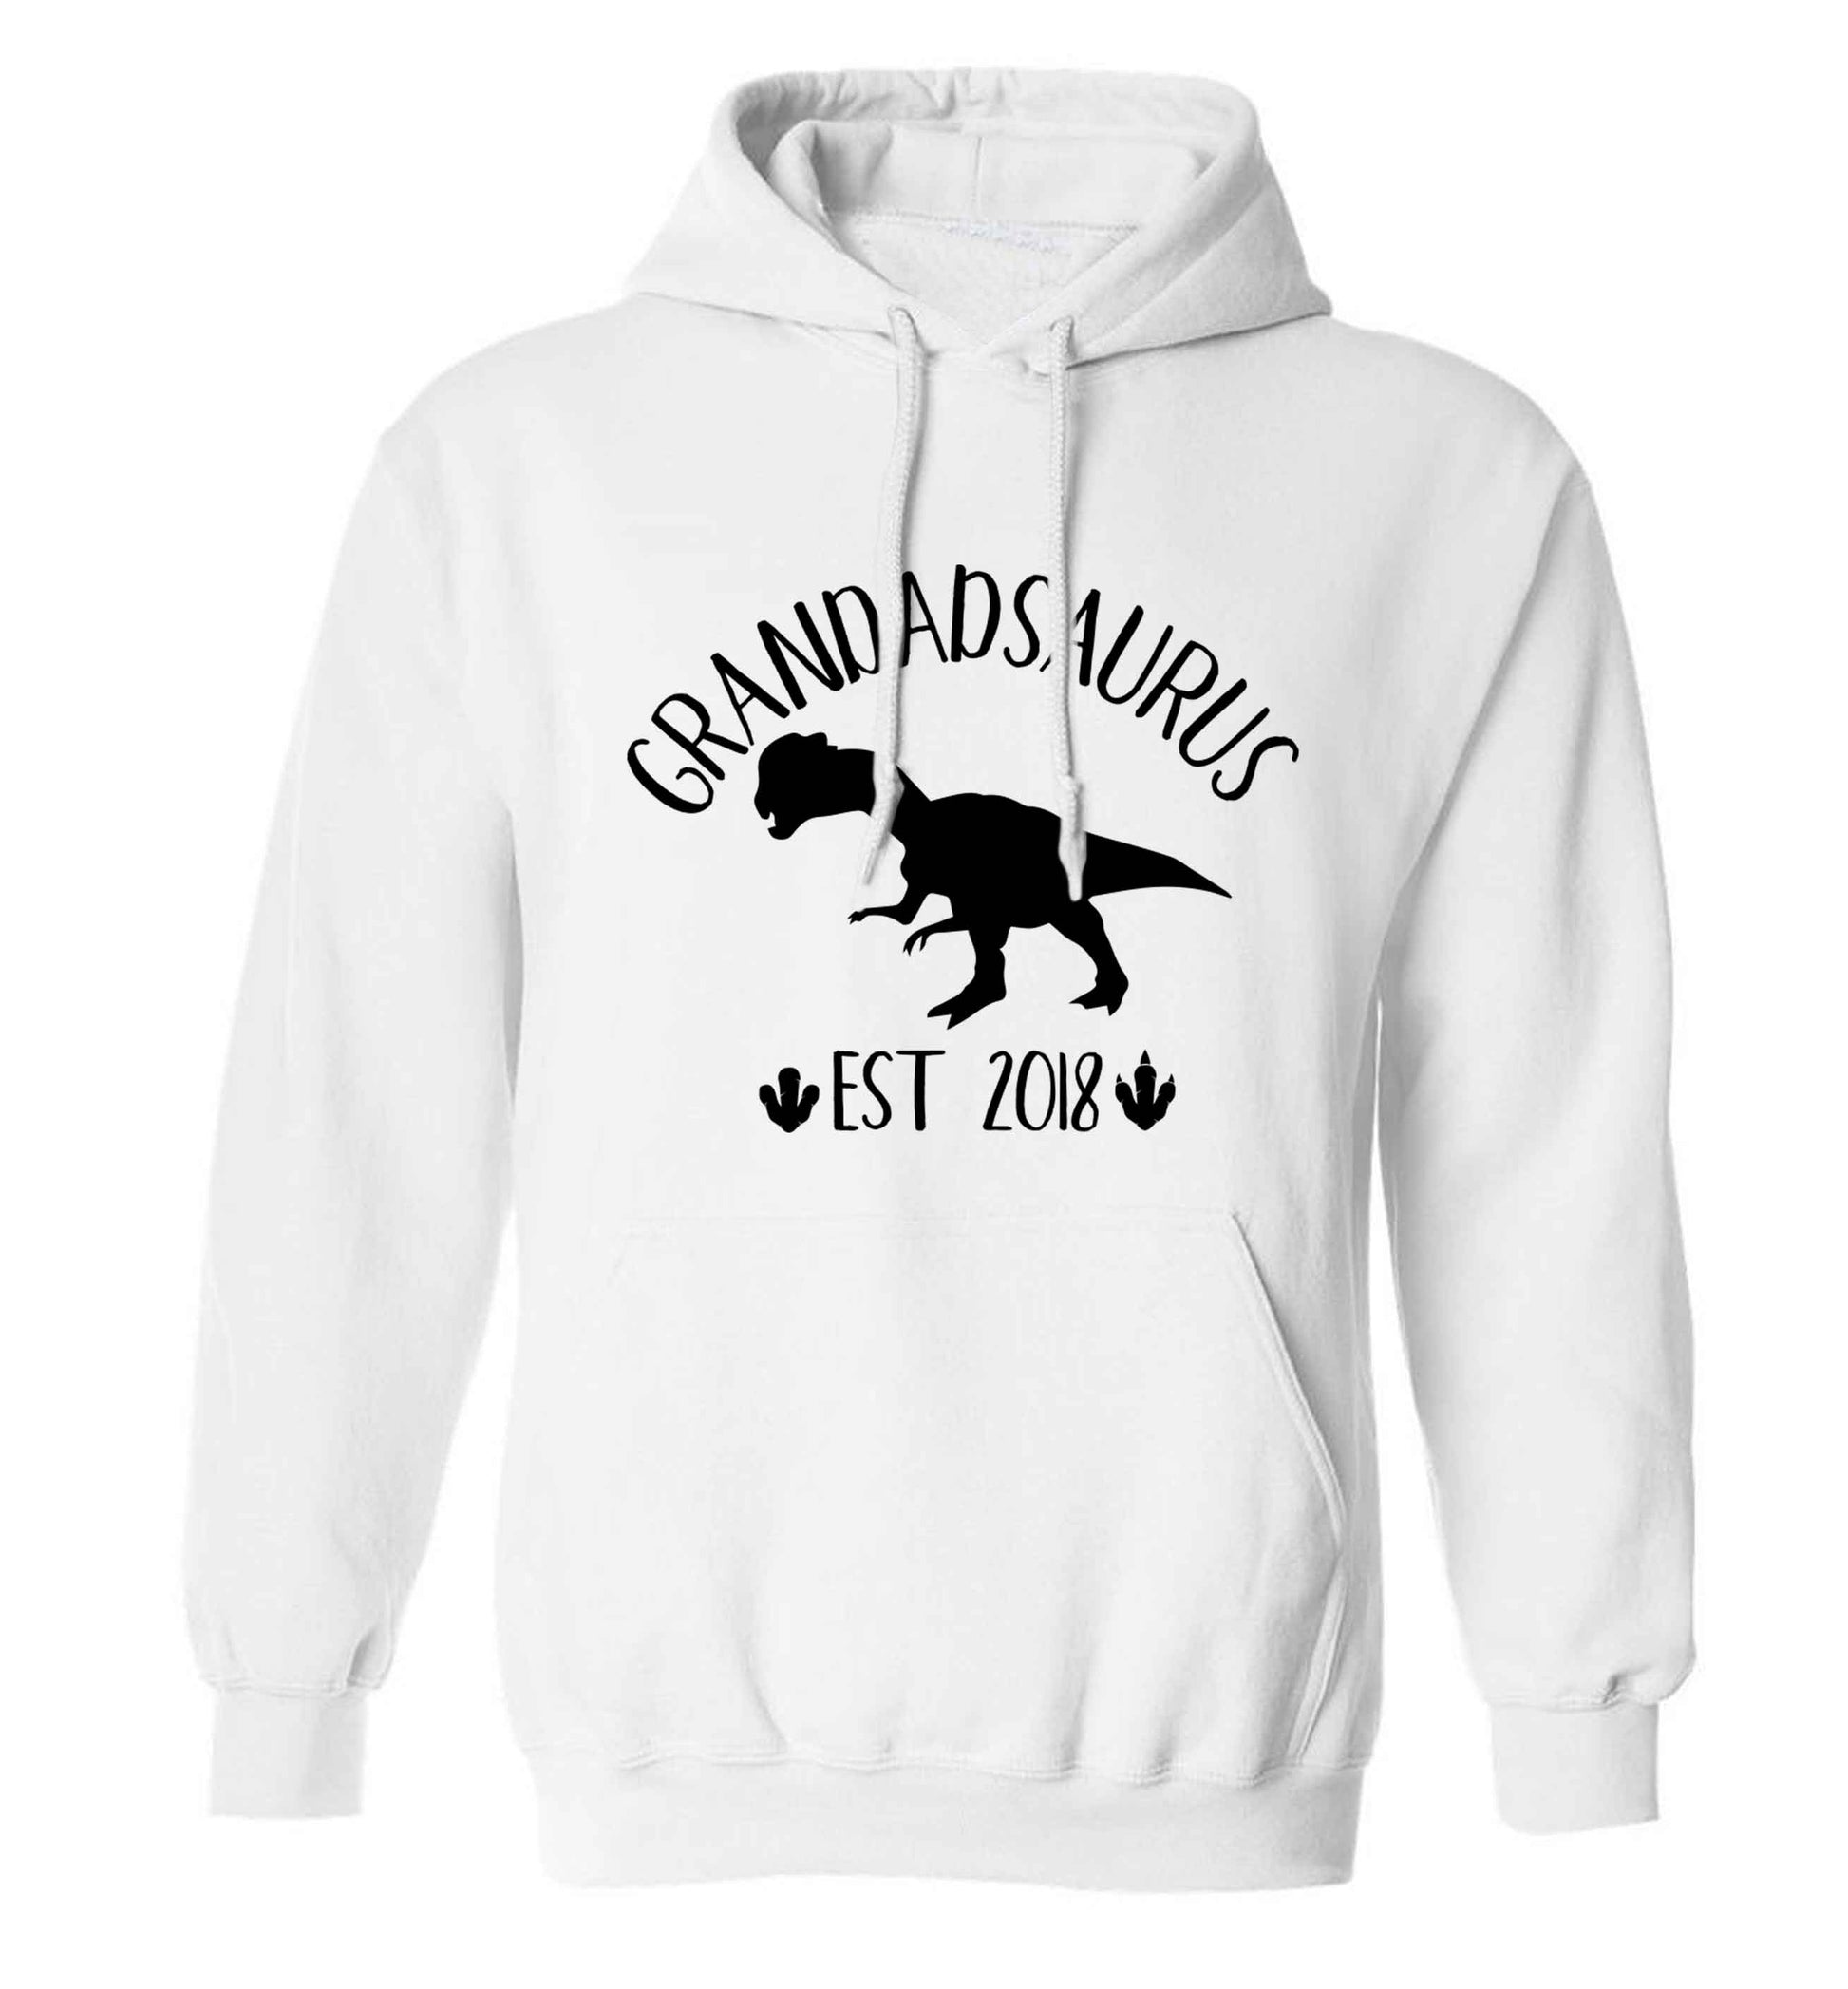 Personalised grandadsaurus since (custom date) adults unisex white hoodie 2XL